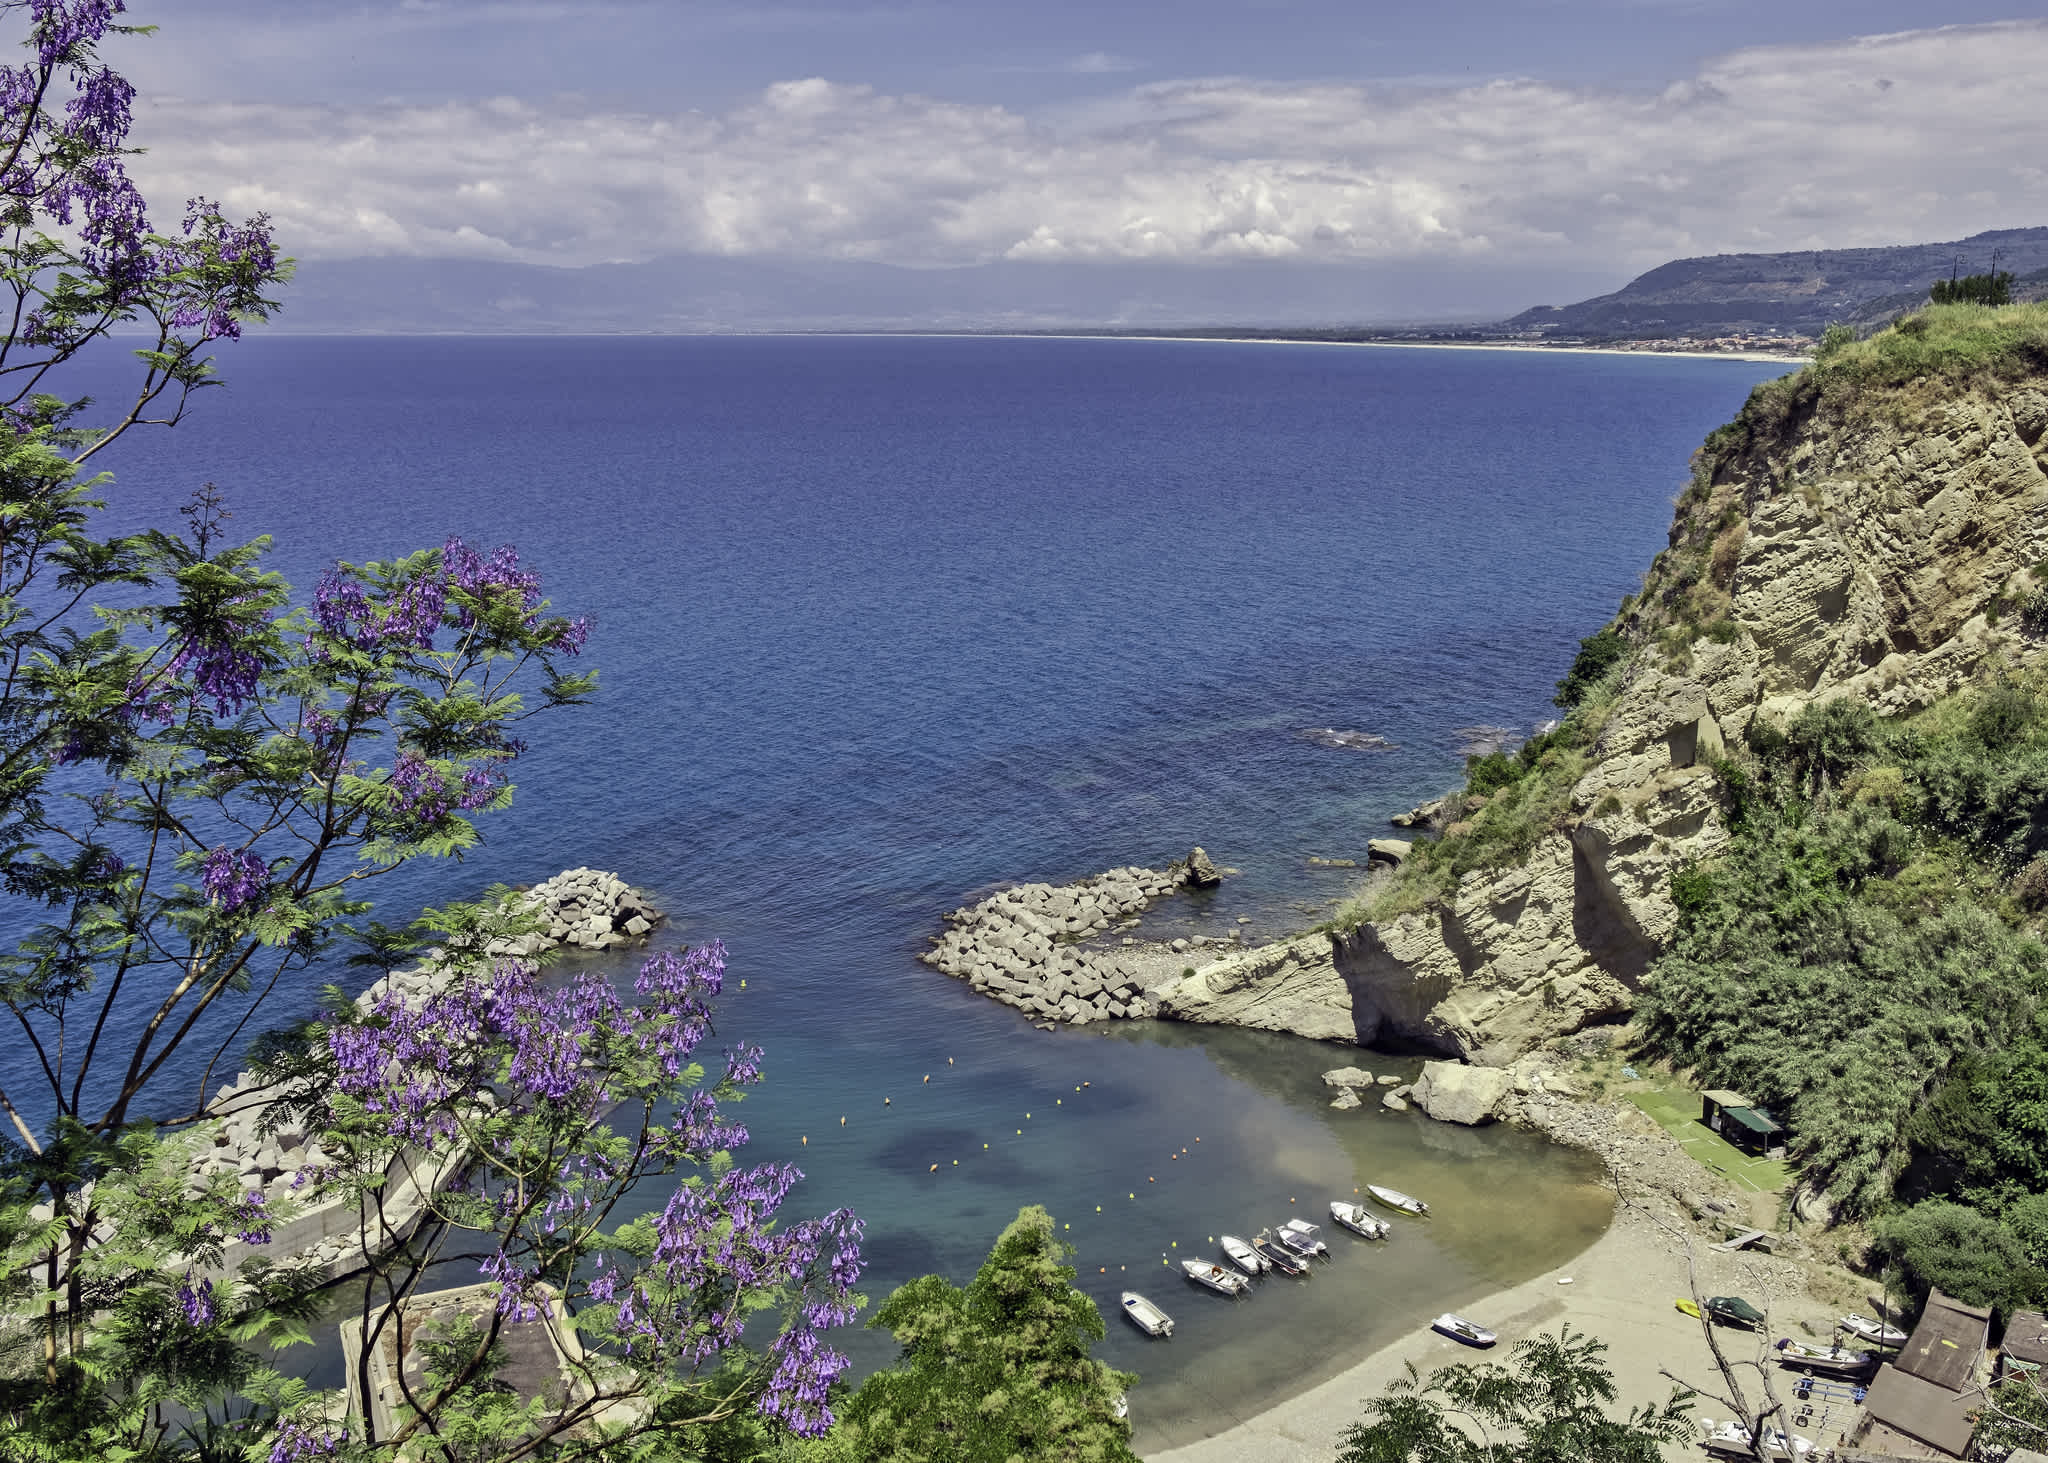 Vue aérienne d'une baie entourée de rochers et d'une végétation luxuriante, en Calabre, en Italie.